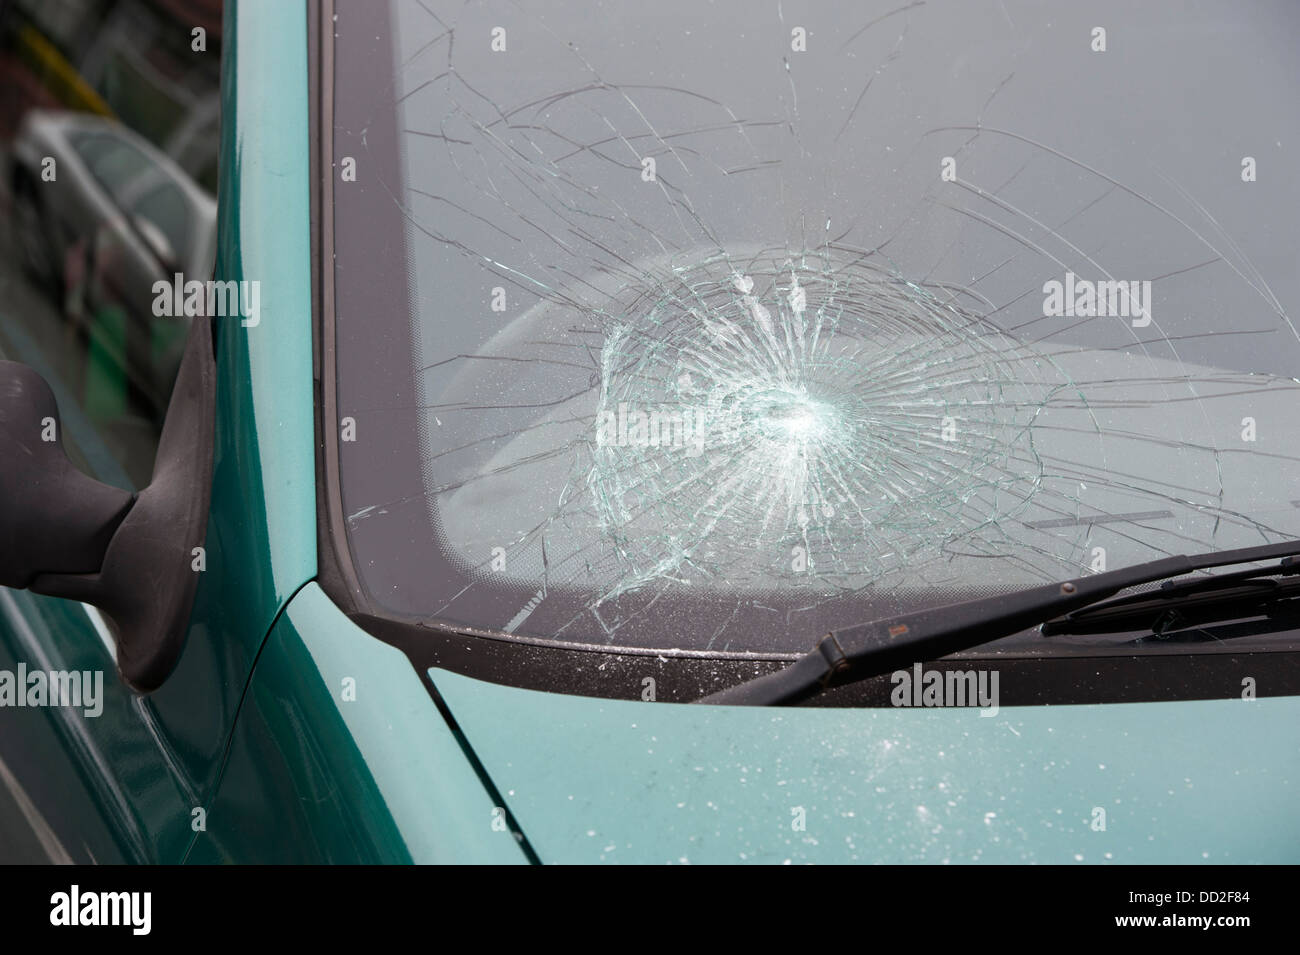 Zersplitterte Windschutzscheibe zeigt kaputte Autoscheibe nach einem  Verkehrsunfall mit Fahrerflucht und Polizeieinsatz wegen Trunkenheit am  Steuer mit Glasschaden an der Frontscheibe und Splittern Stock-Foto